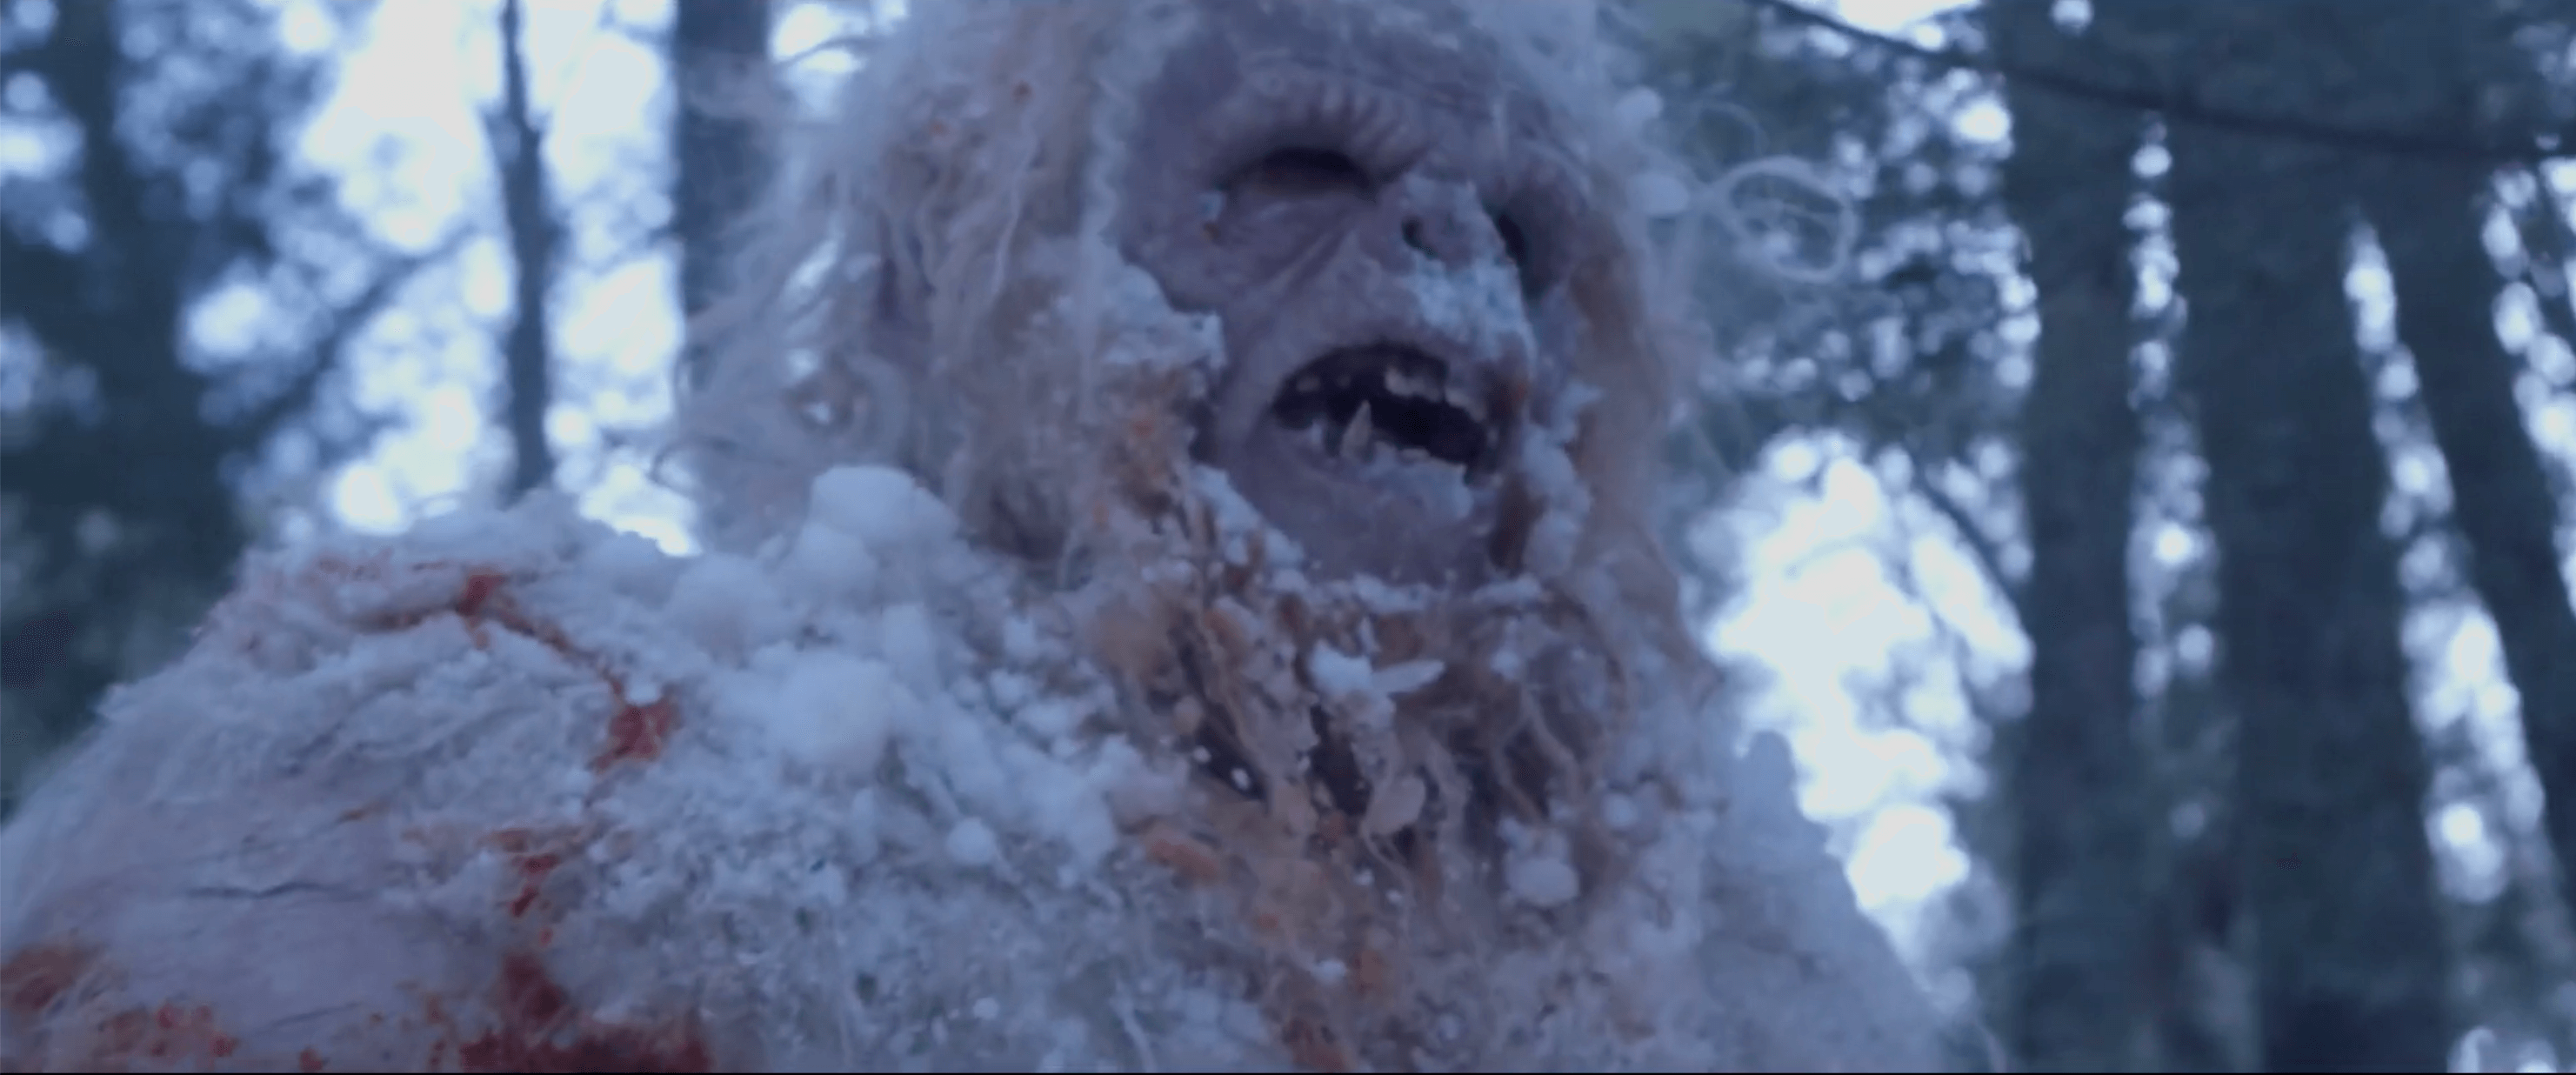 Abominable-movie-film-horror-2019-creature-yeti